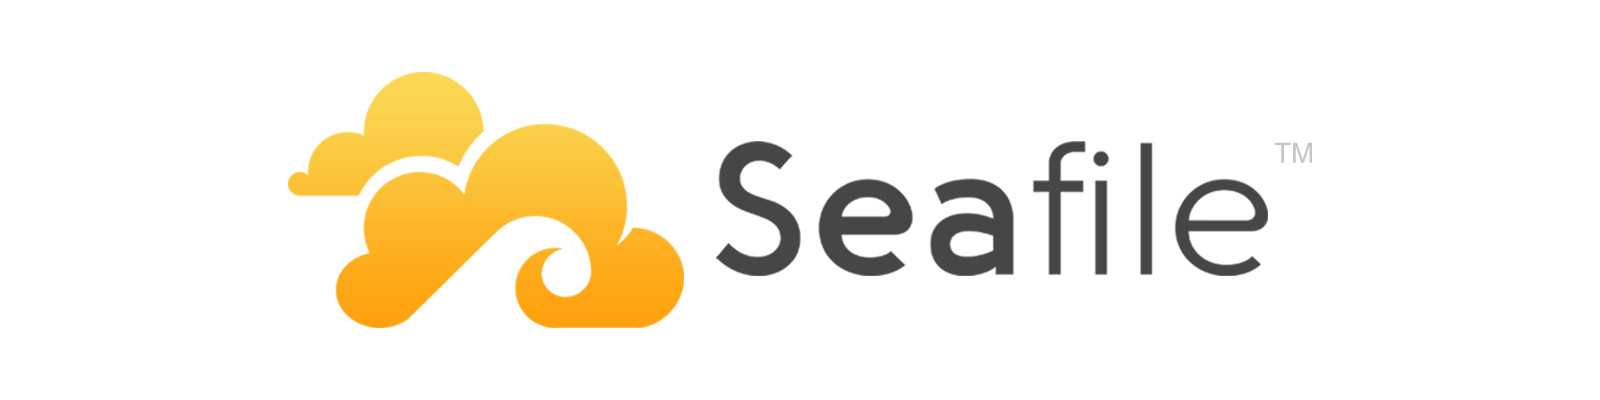 Seafile Logo